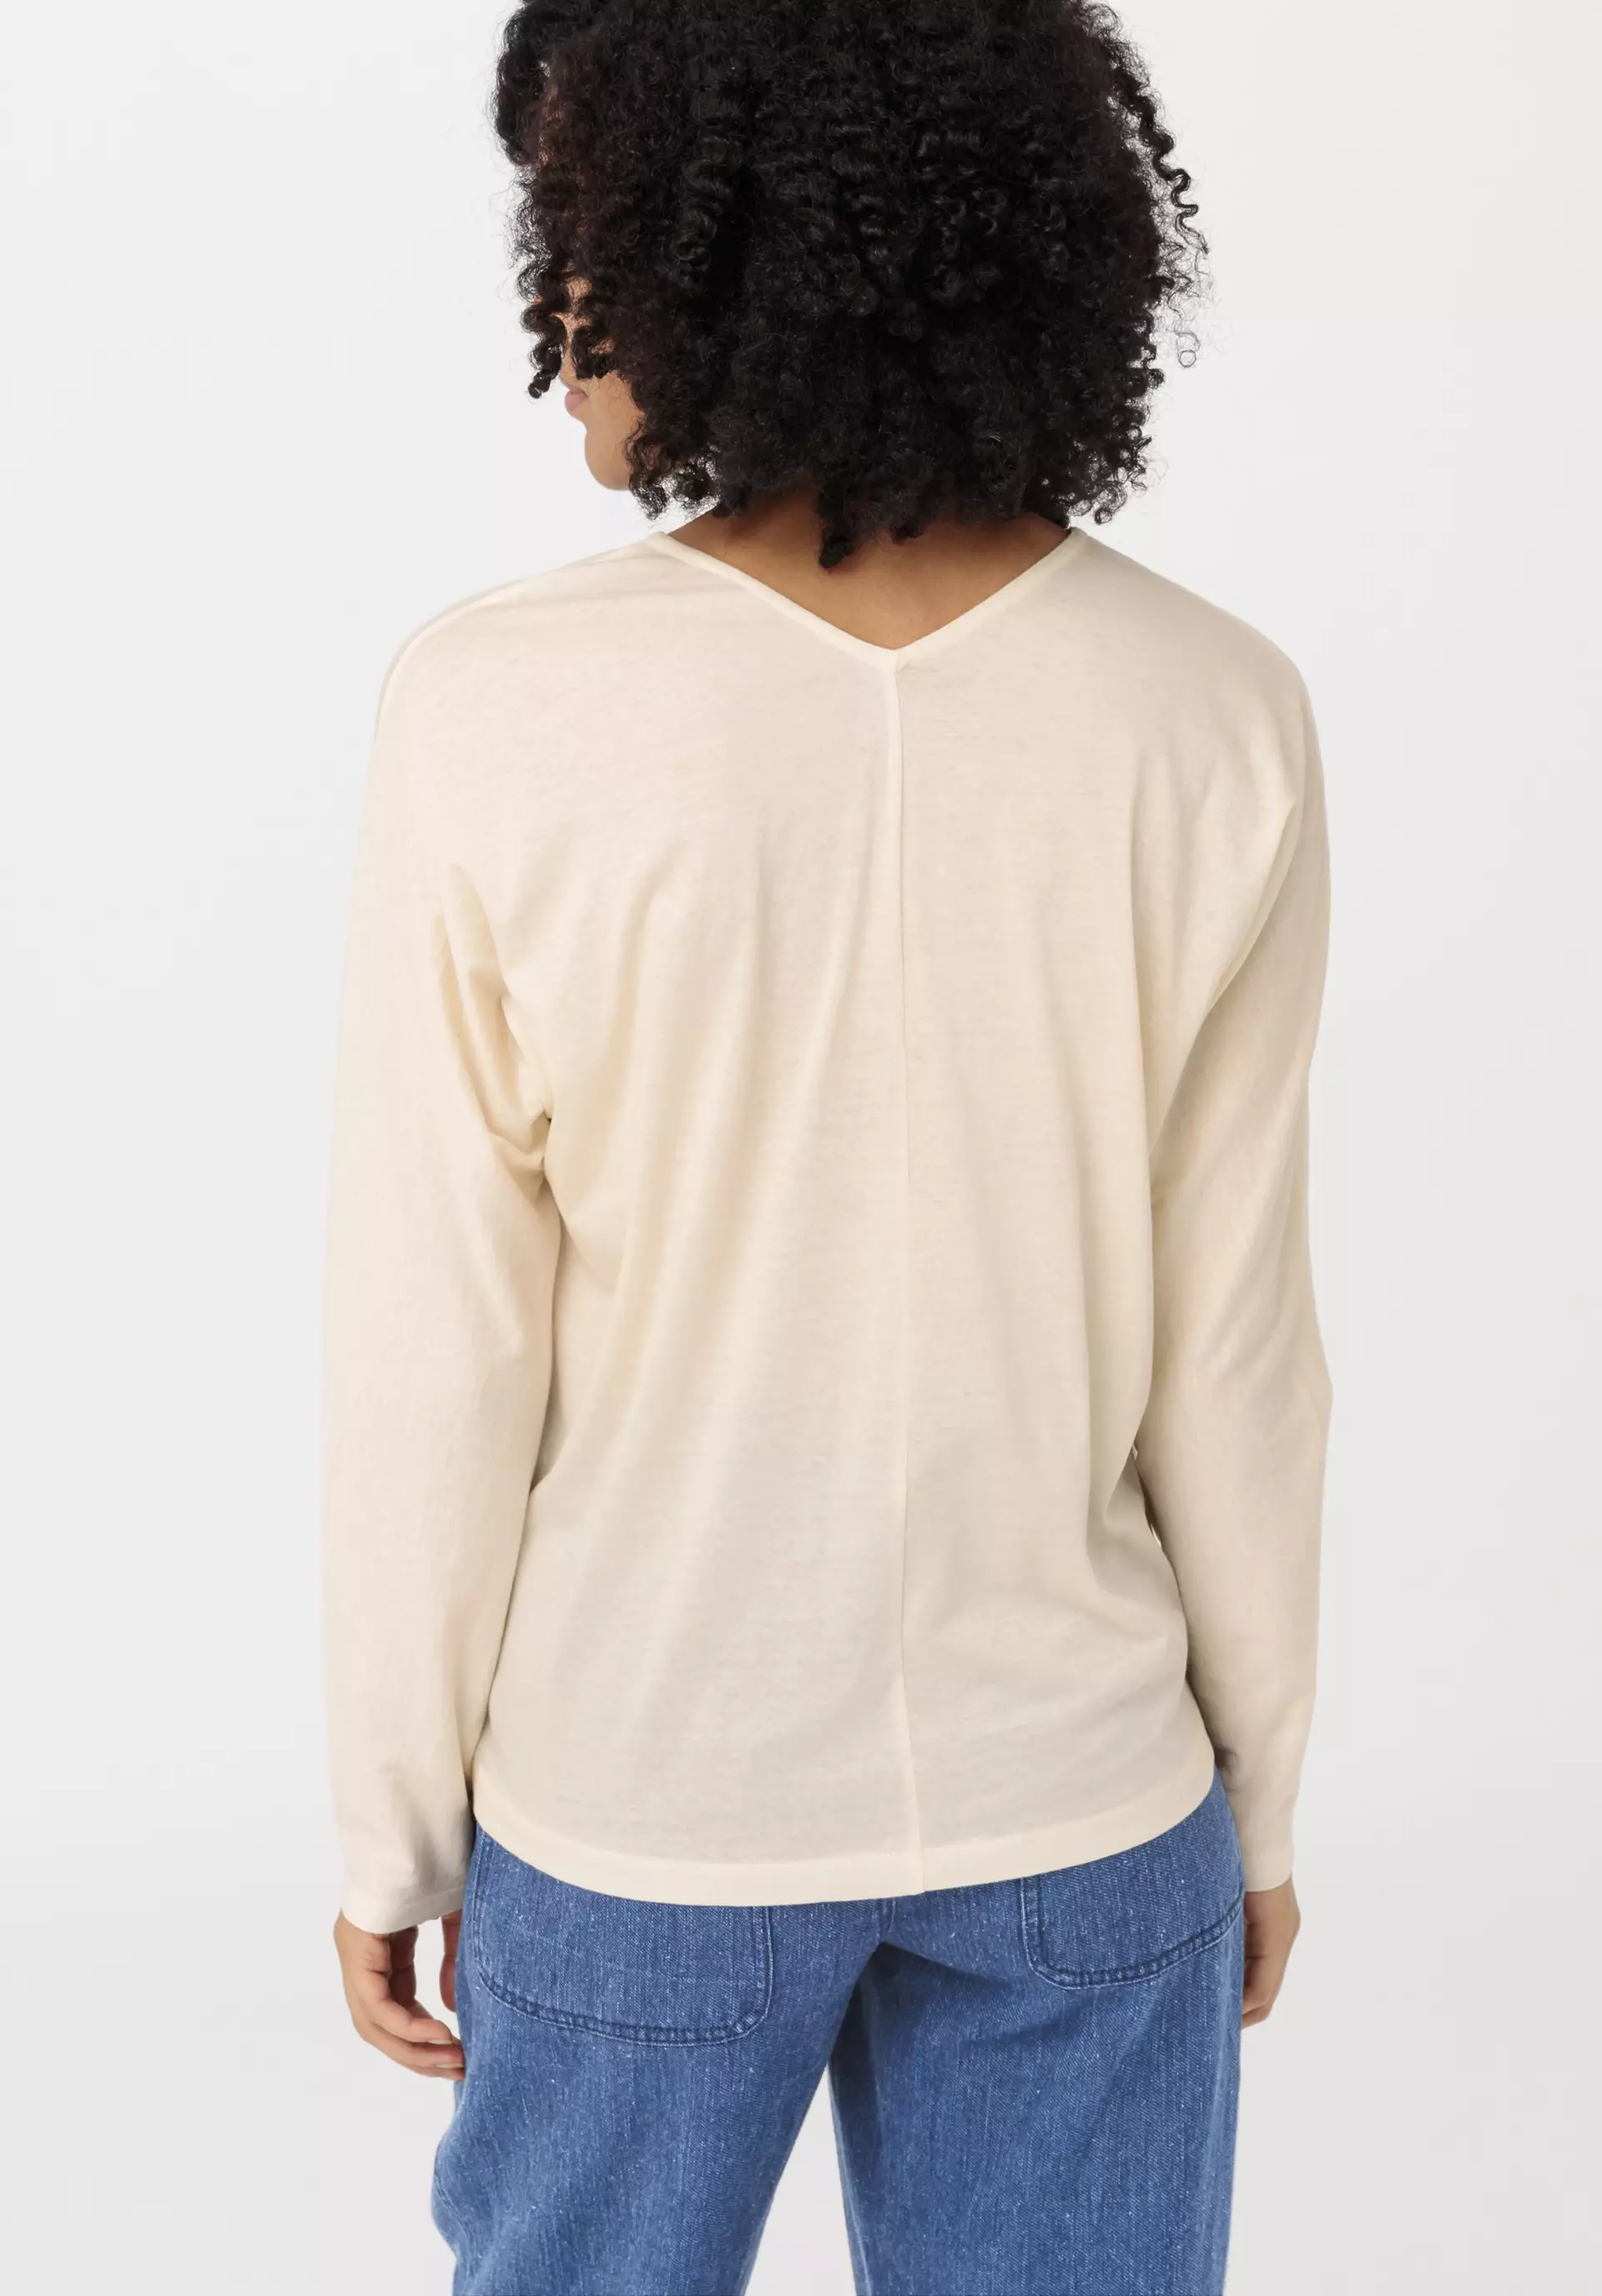 Langarm-Shirt aus reiner Bio-Baumwolle 53225